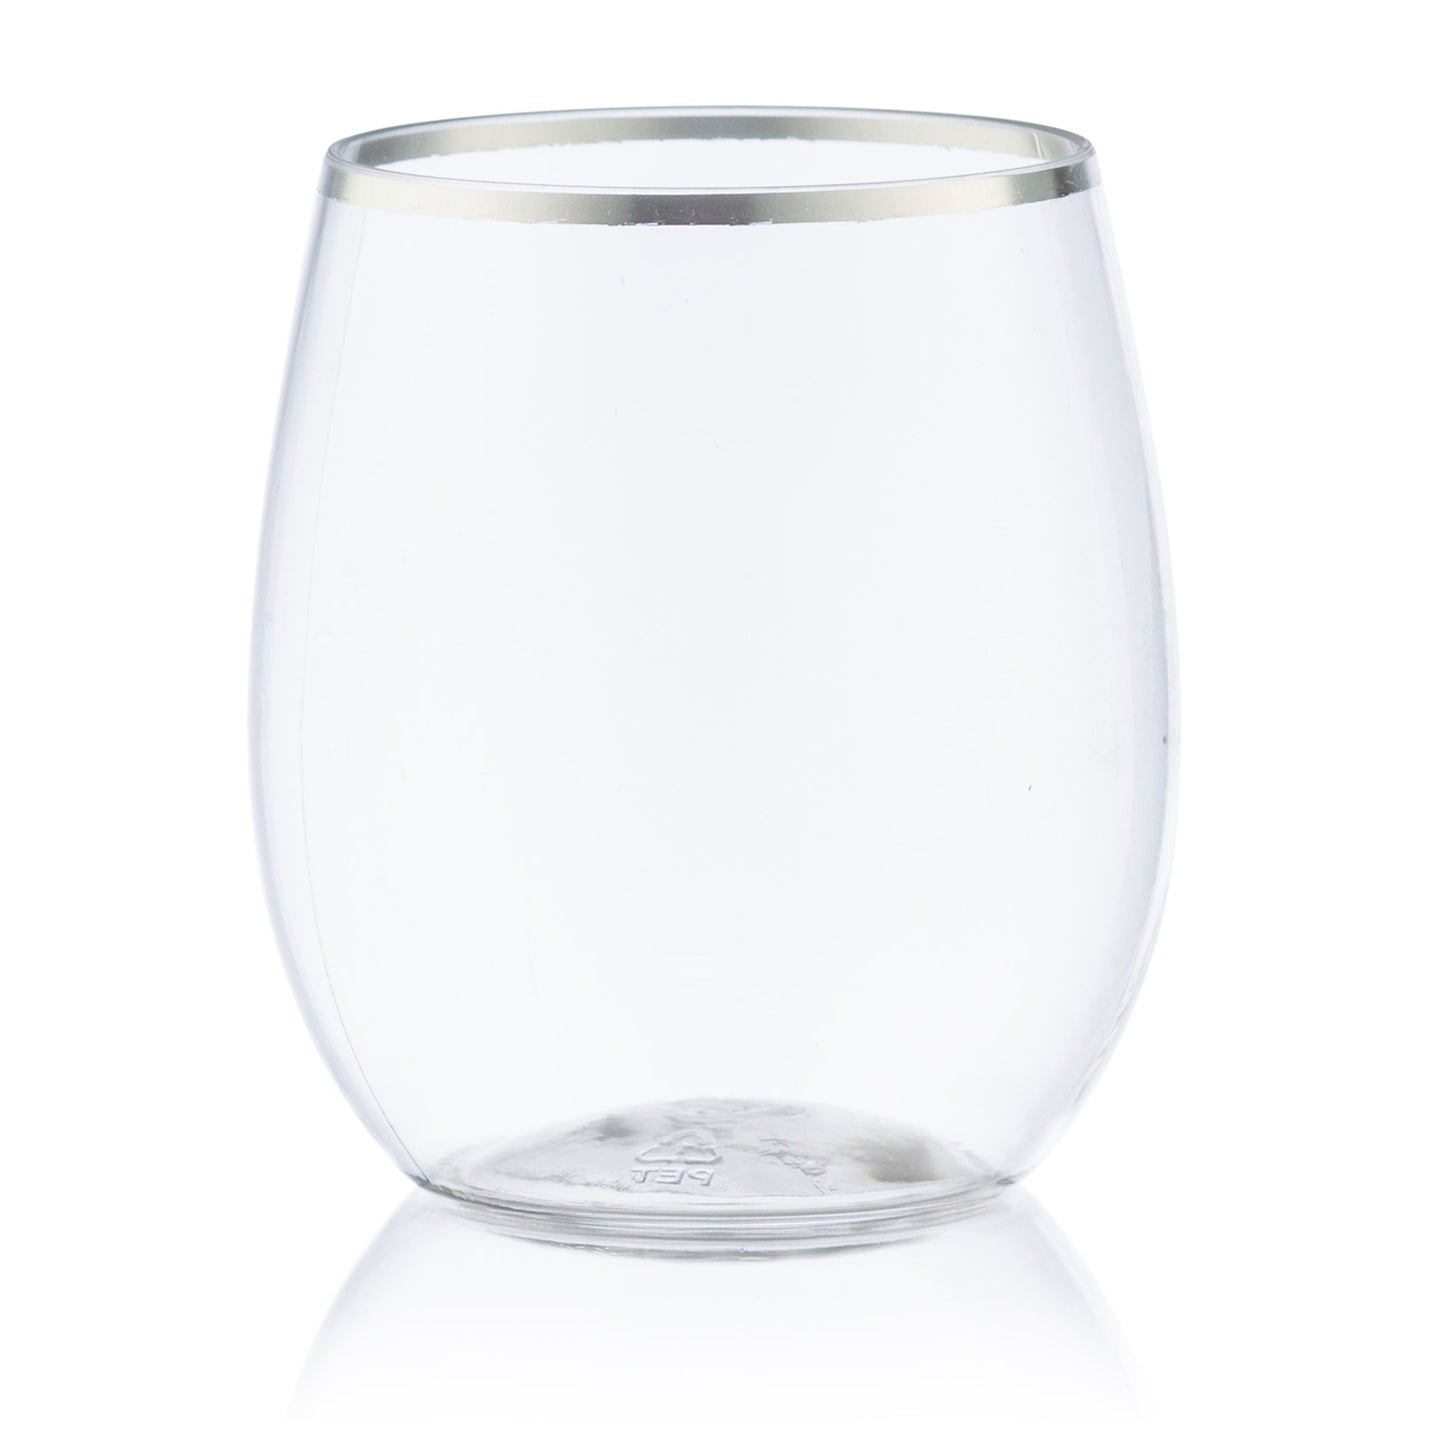 Silver Rim Stemless Plastic Wine Glasses Goblet 12 oz Cups Decorline 6 Pieces  